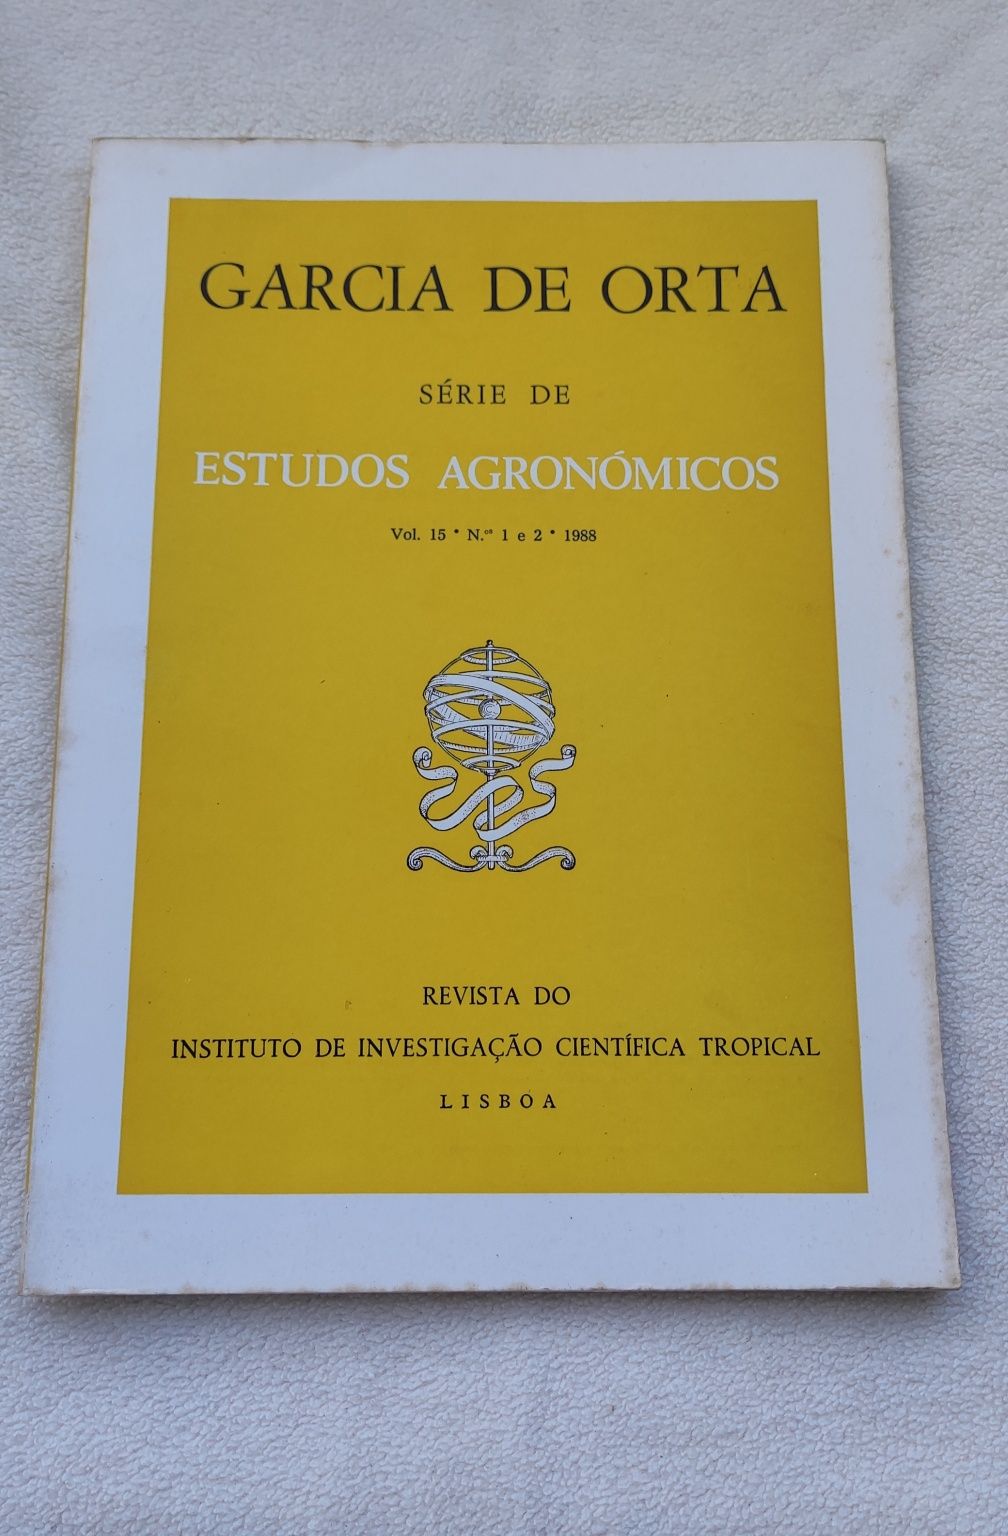 Garcia de Orta série de estudos agronómicos